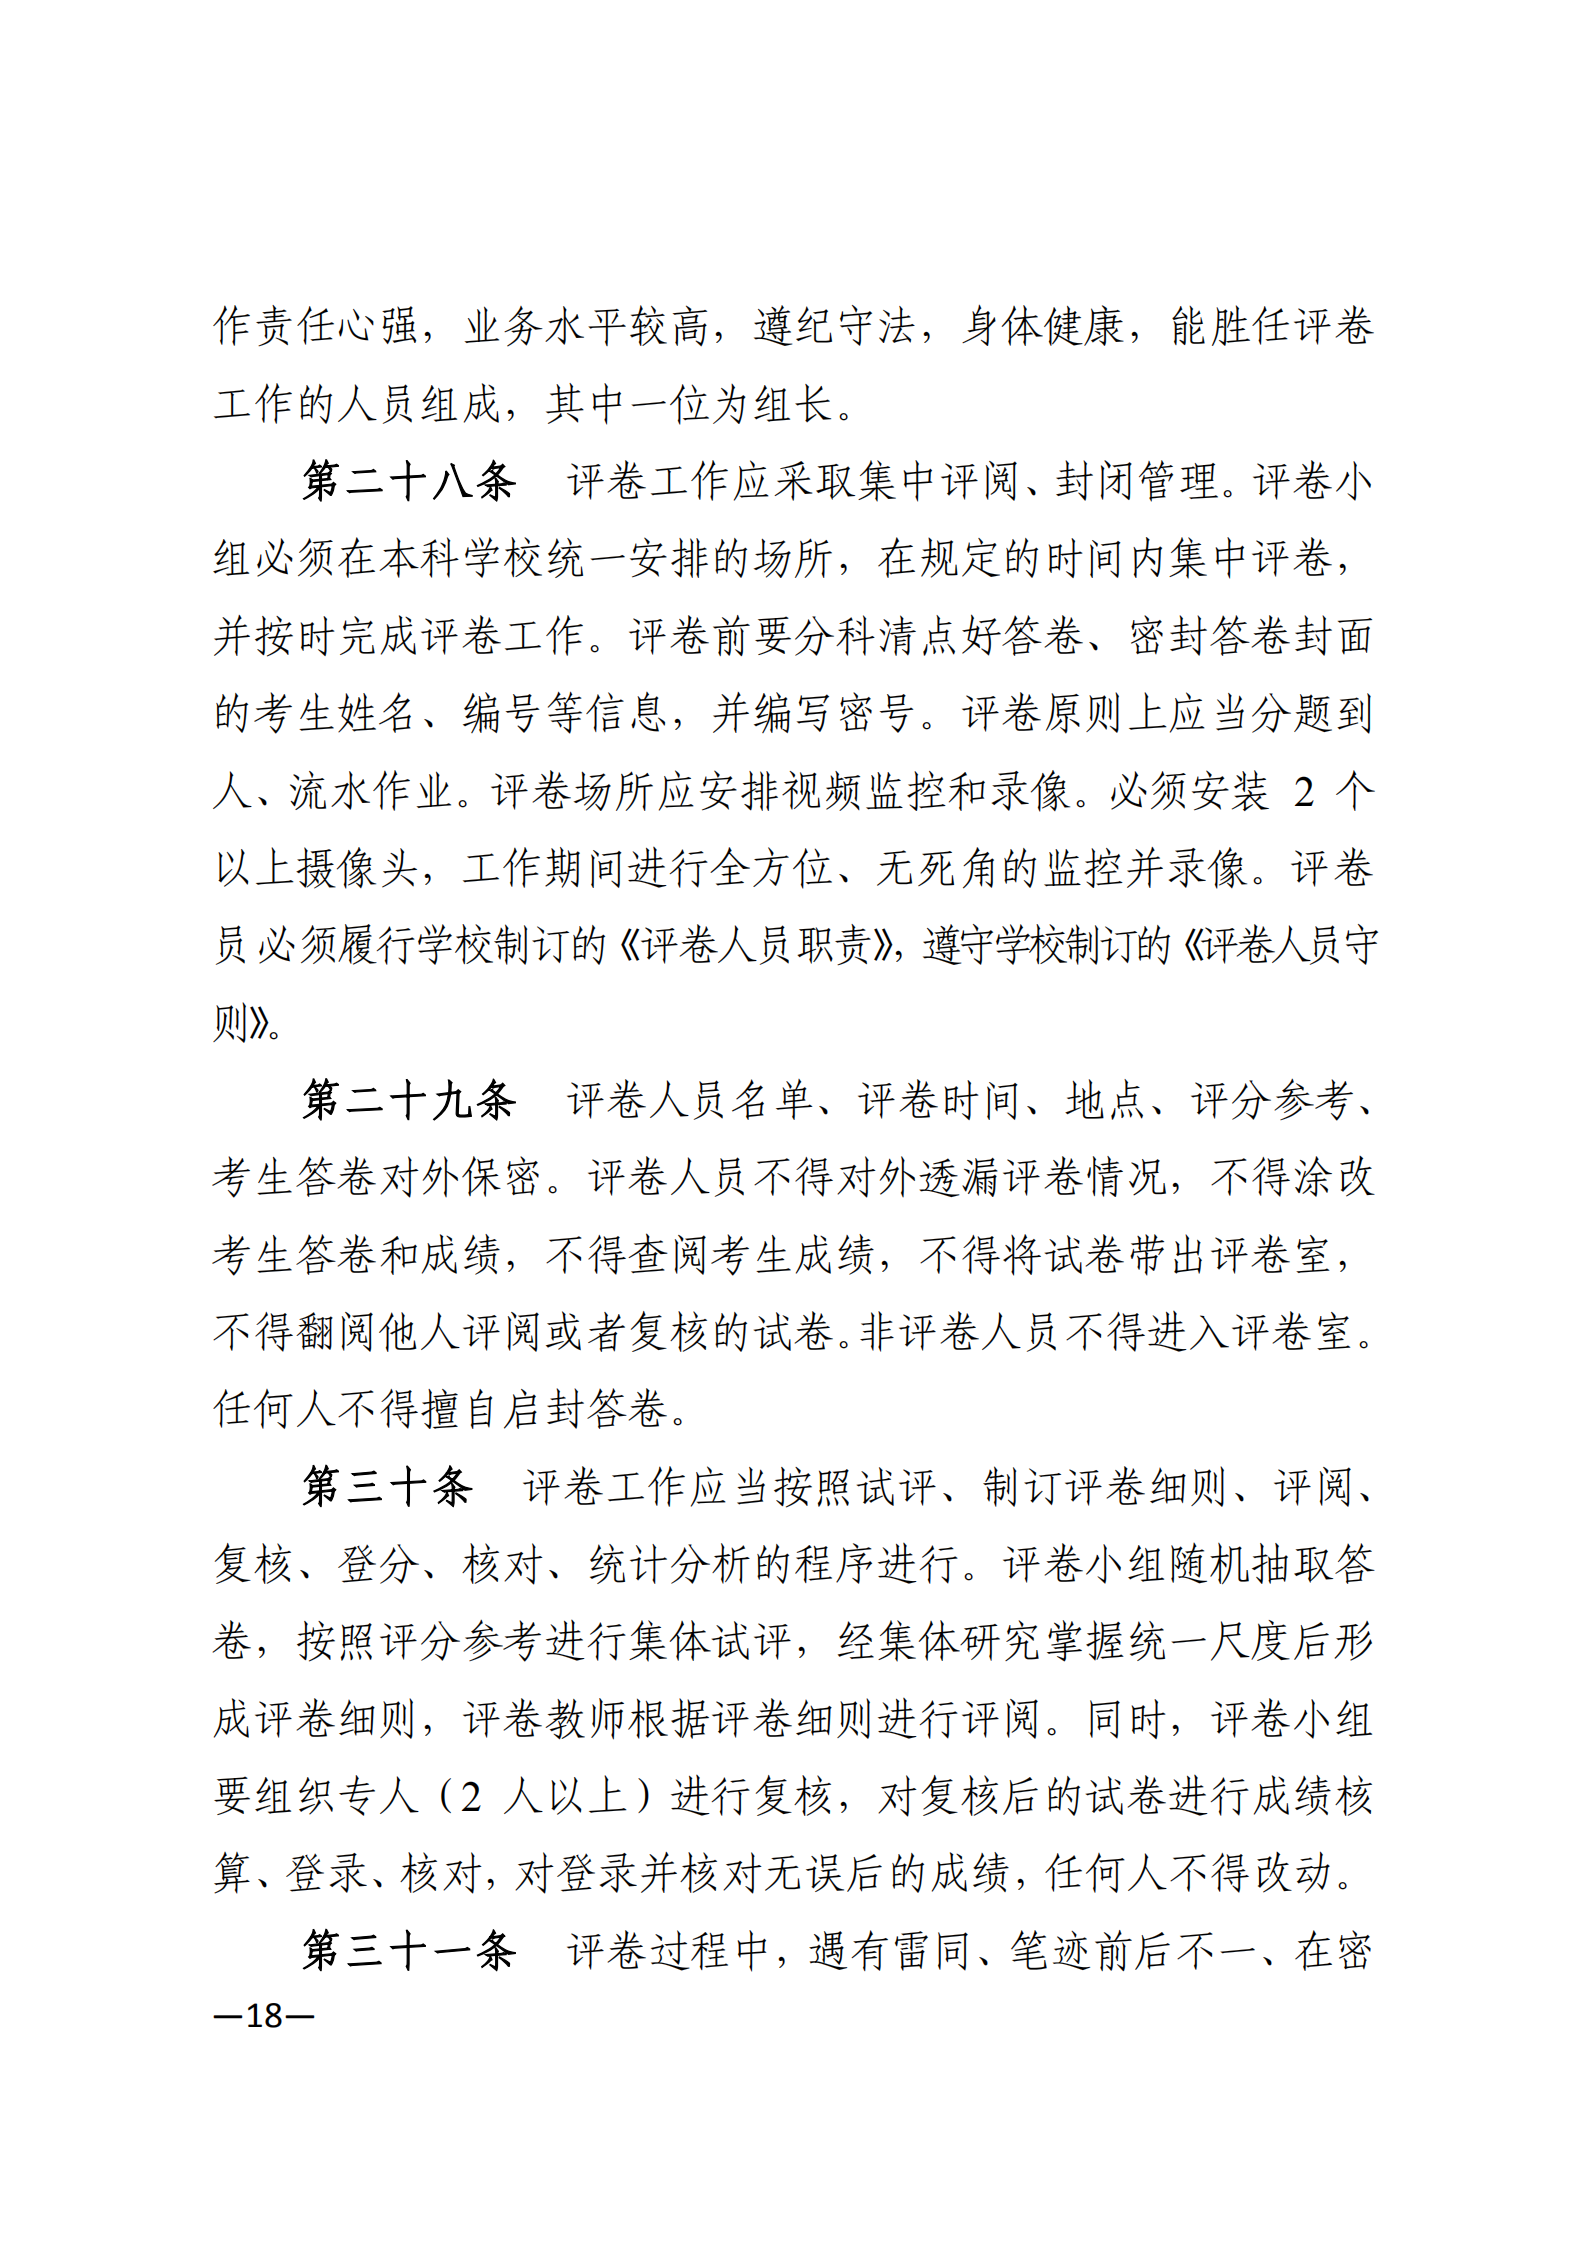 3_湘教发〔2021〕2号 关于印发《2021年湖南省普通高等教育“专升本”考试招生工作实施方案》的通知_17.png